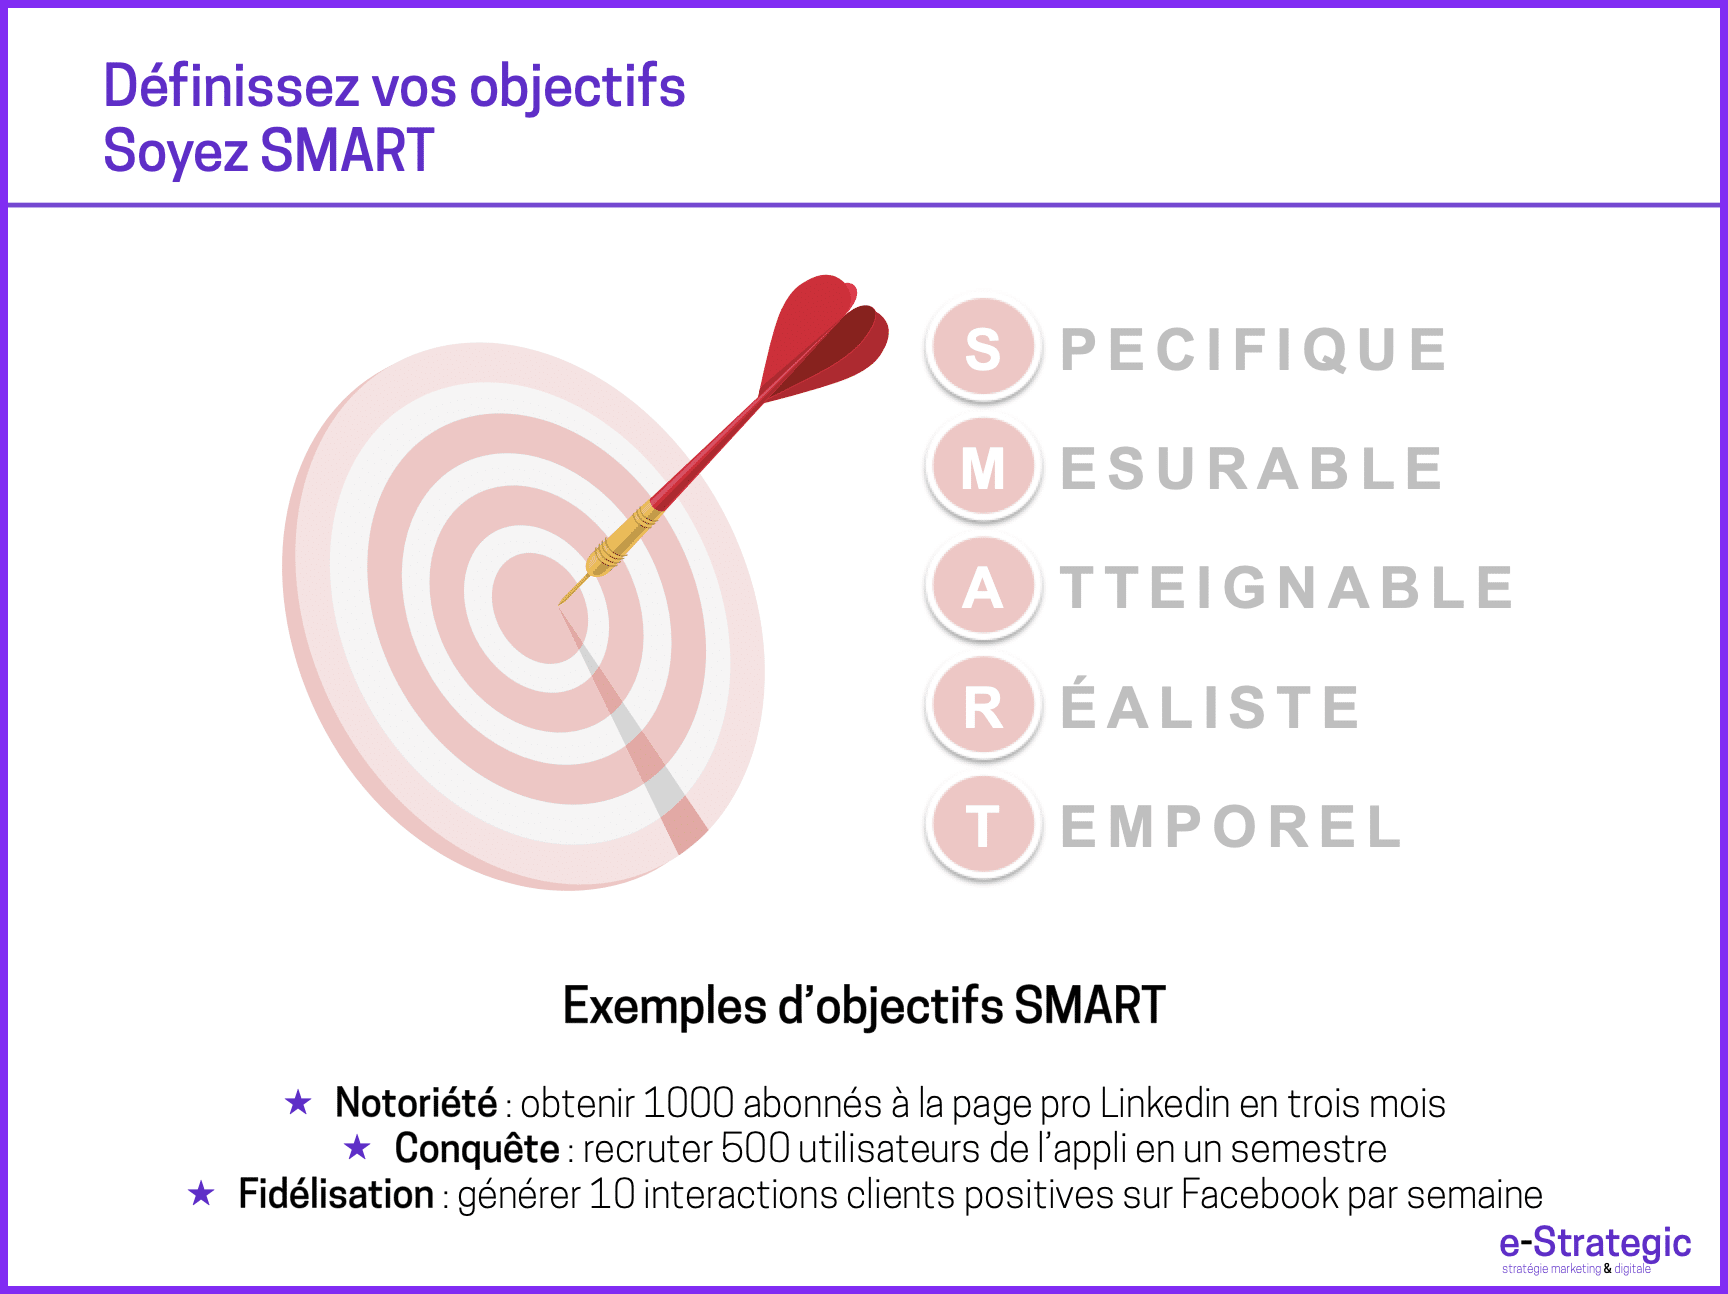 Objectifs SMART  Spécifique, Mesurable, Atteignable, Réaliste, Temporel